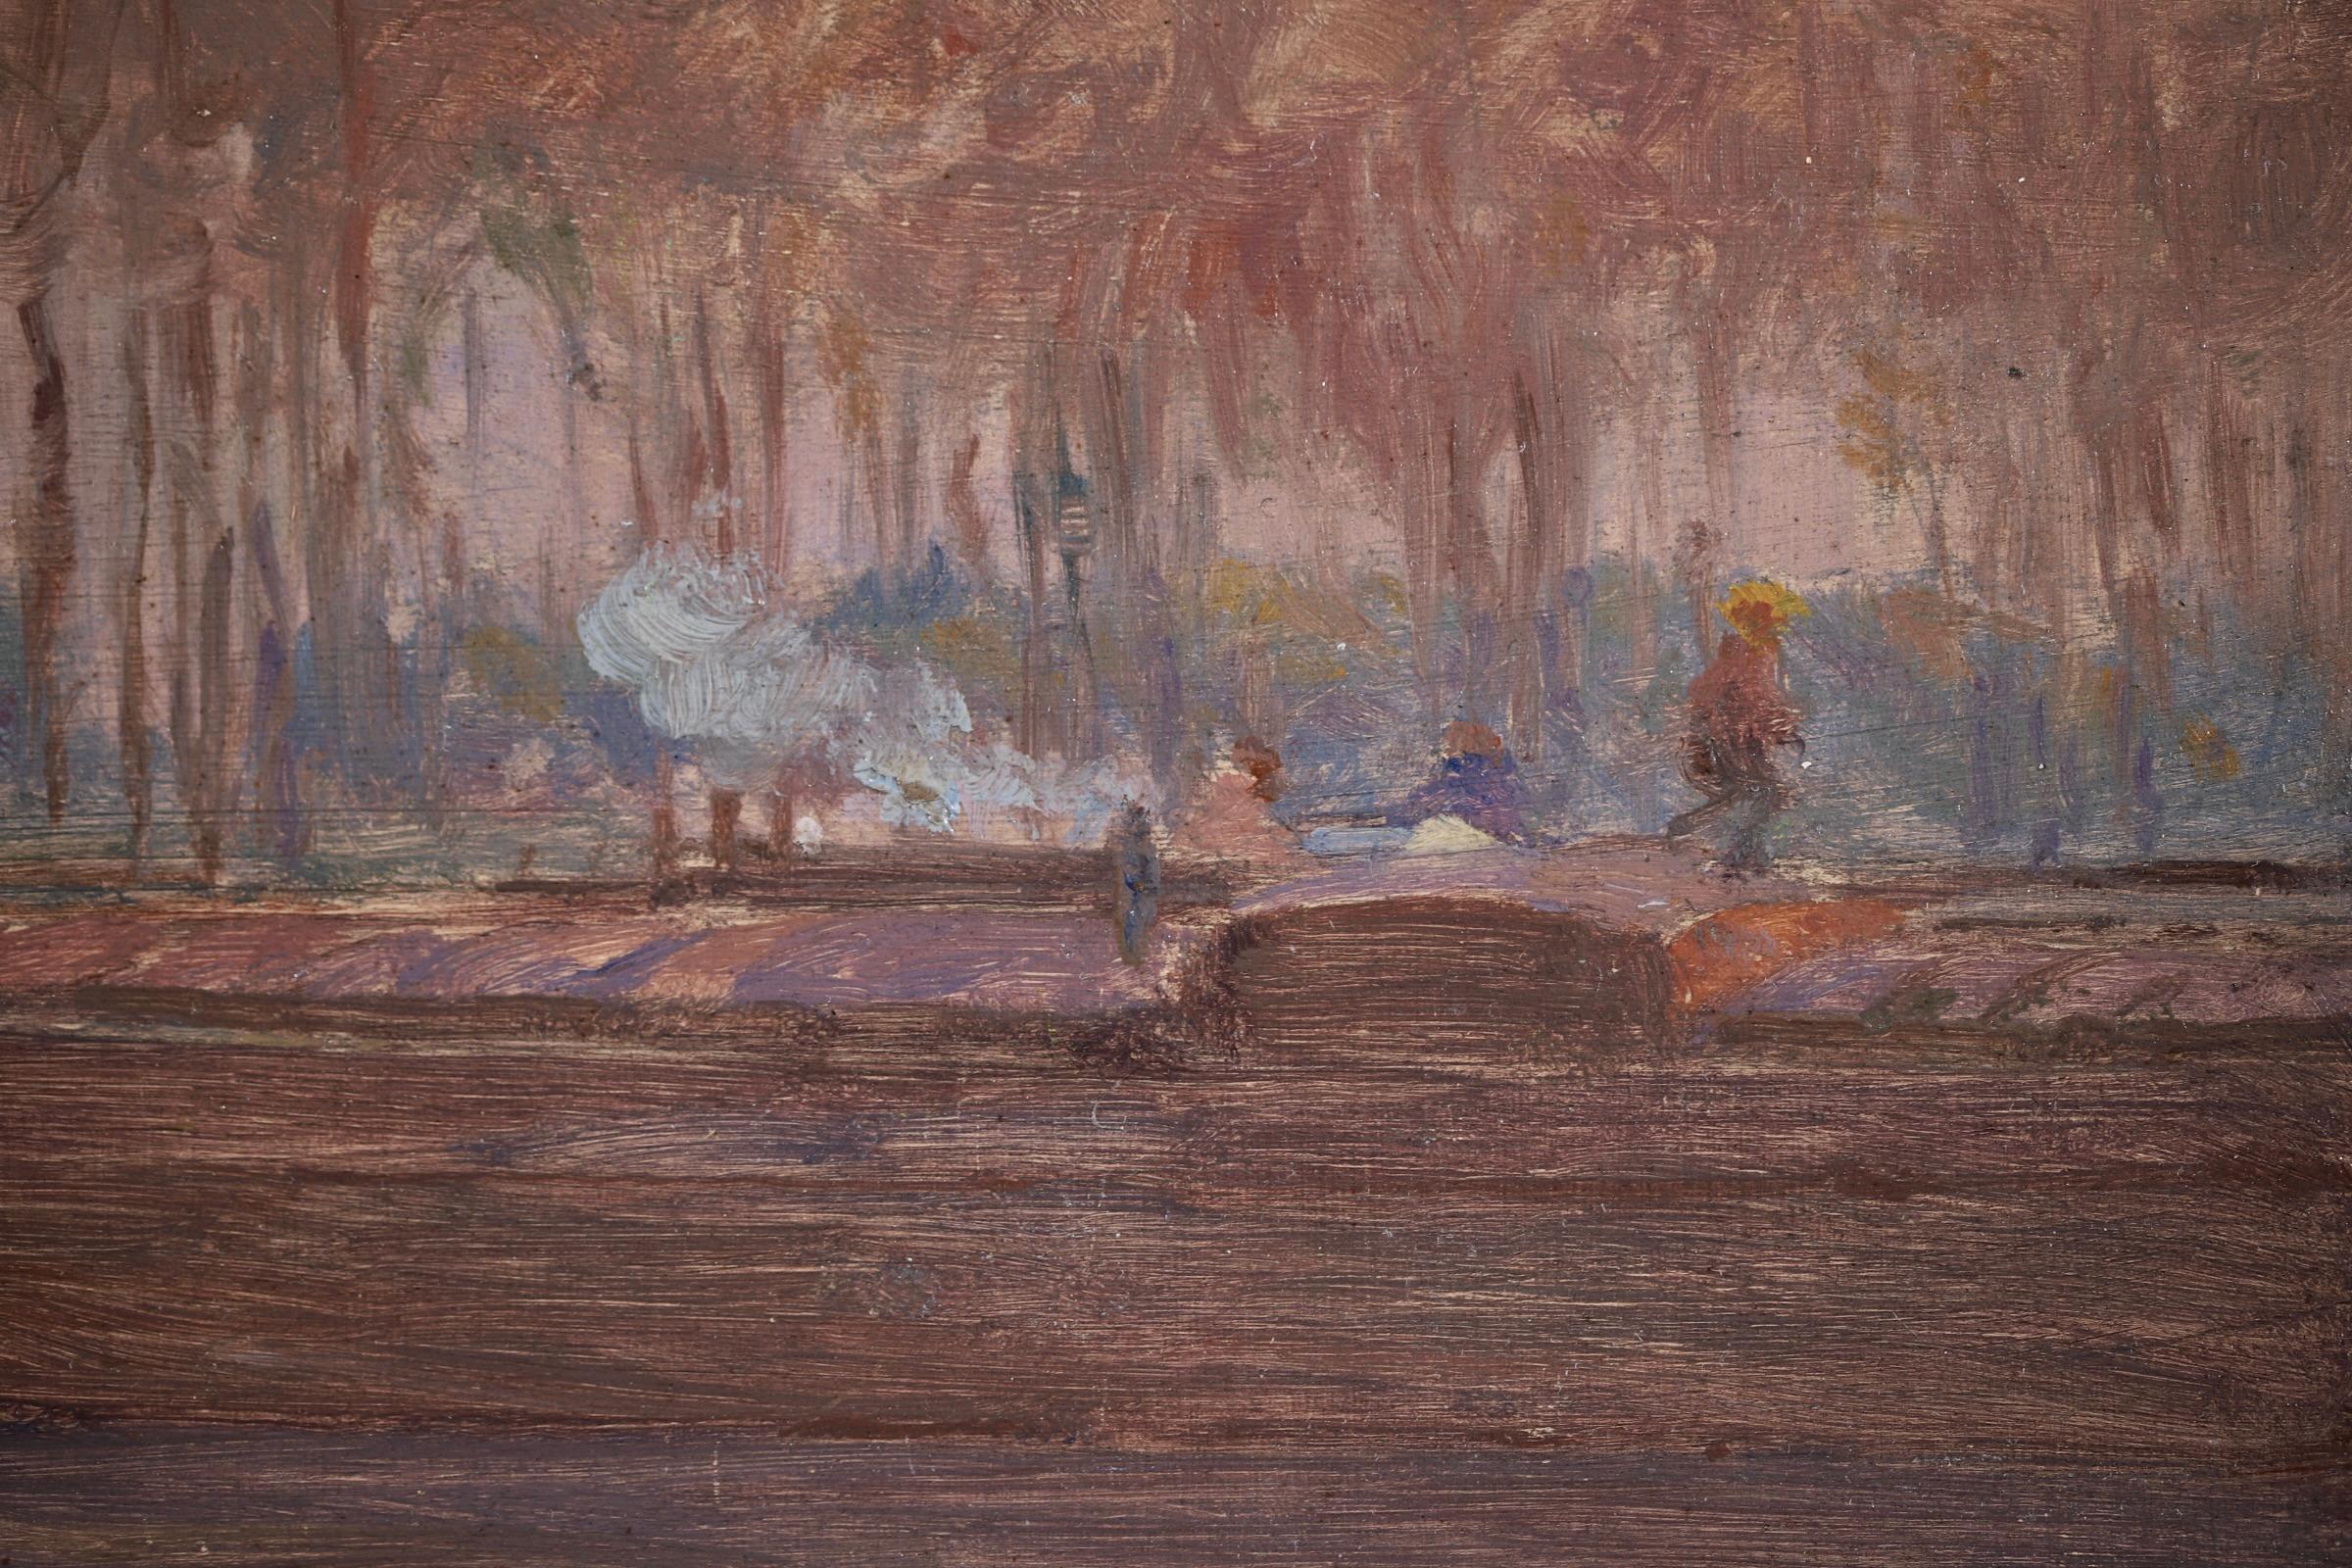 Barges on the River - Impressionist Oil, Boats in Landscape by Henri Duhem 5